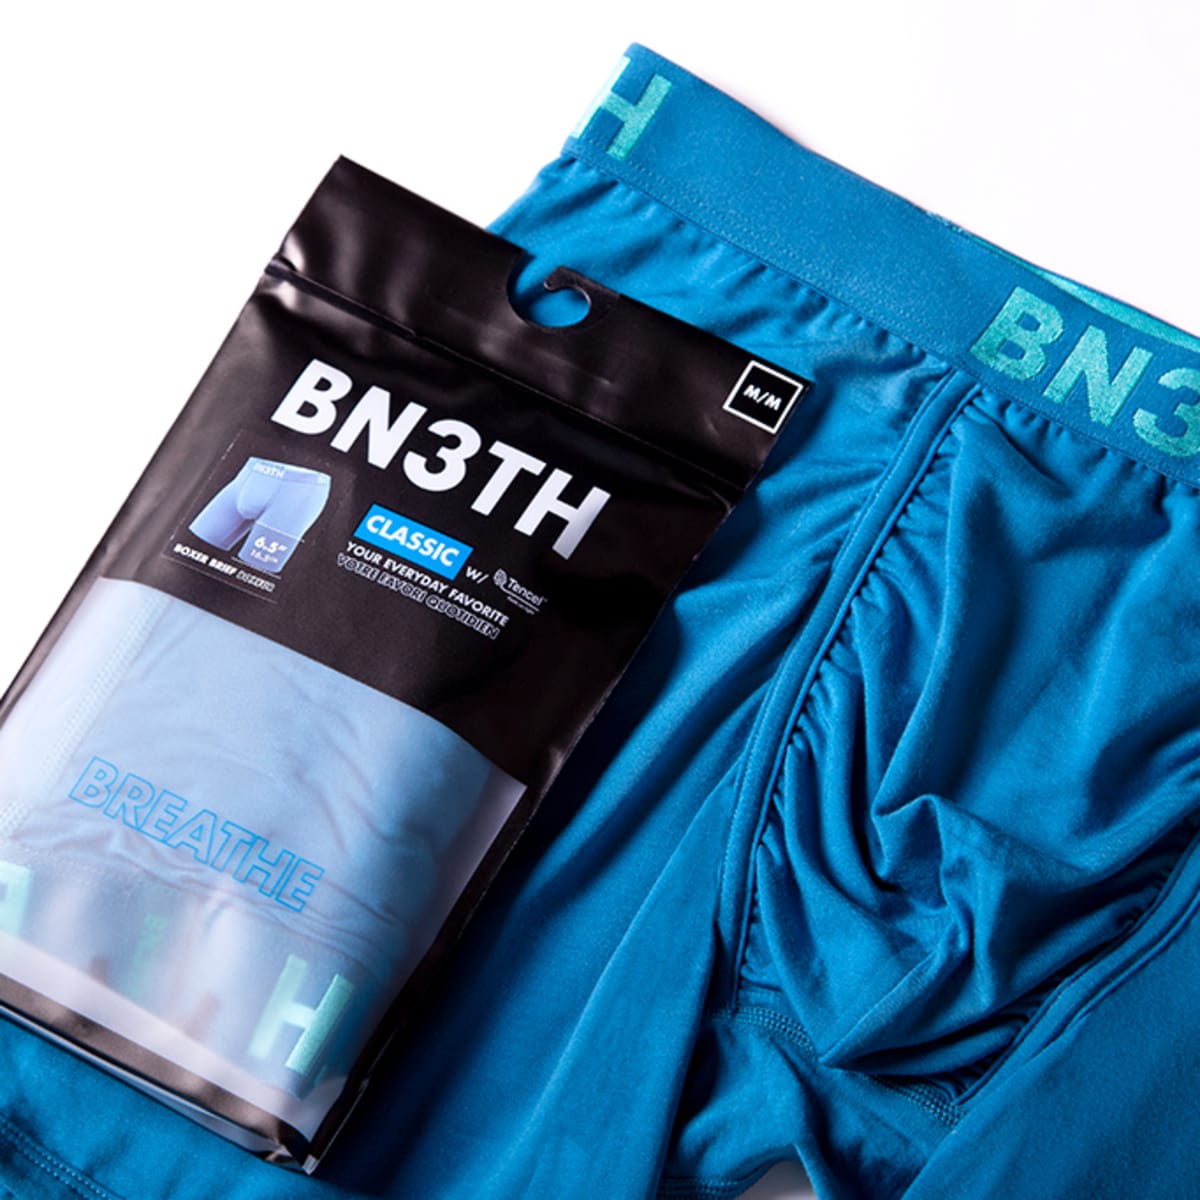 Boxer Briefs  BN3TH Underwear –